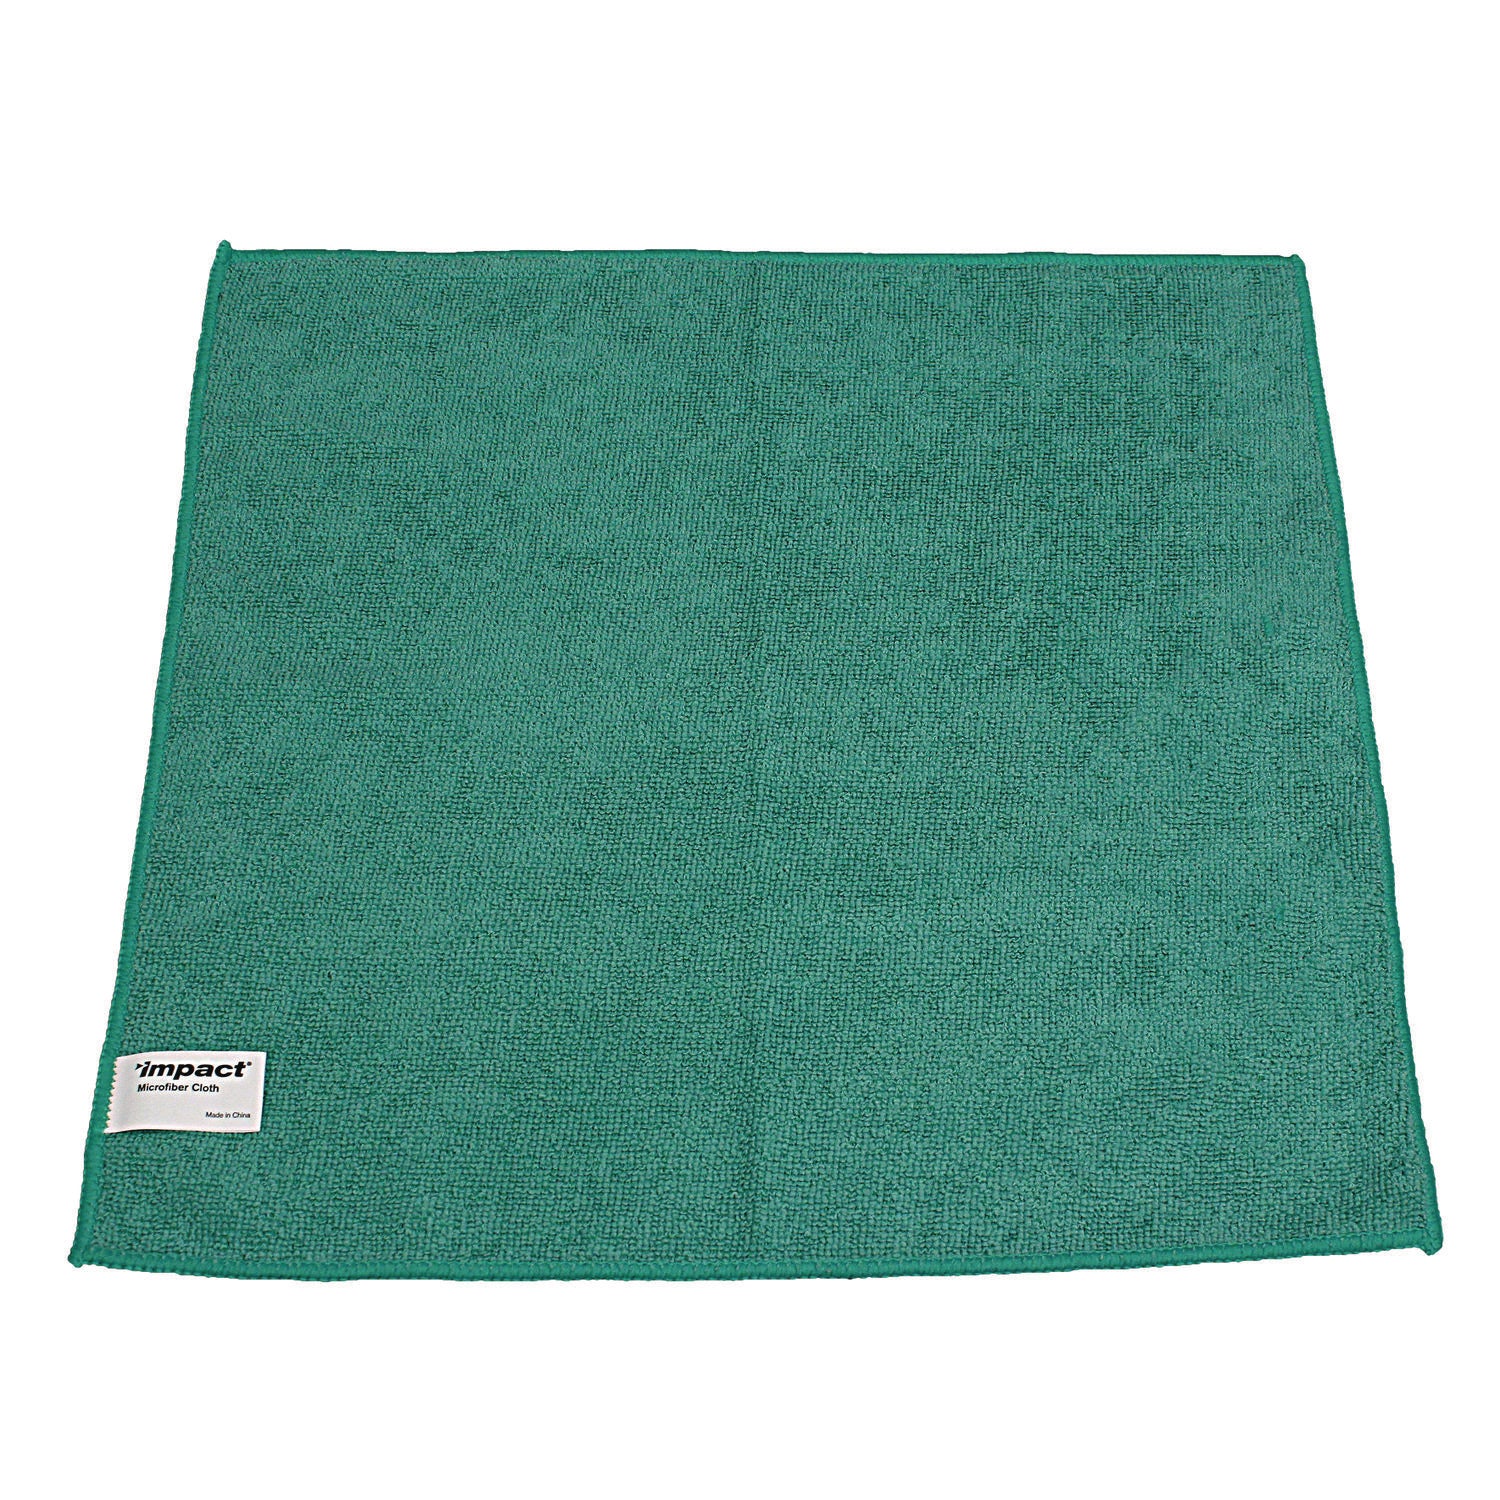 lightweight-microfiber-cloths-16-x-16-green-240-carton_implfk301 - 3